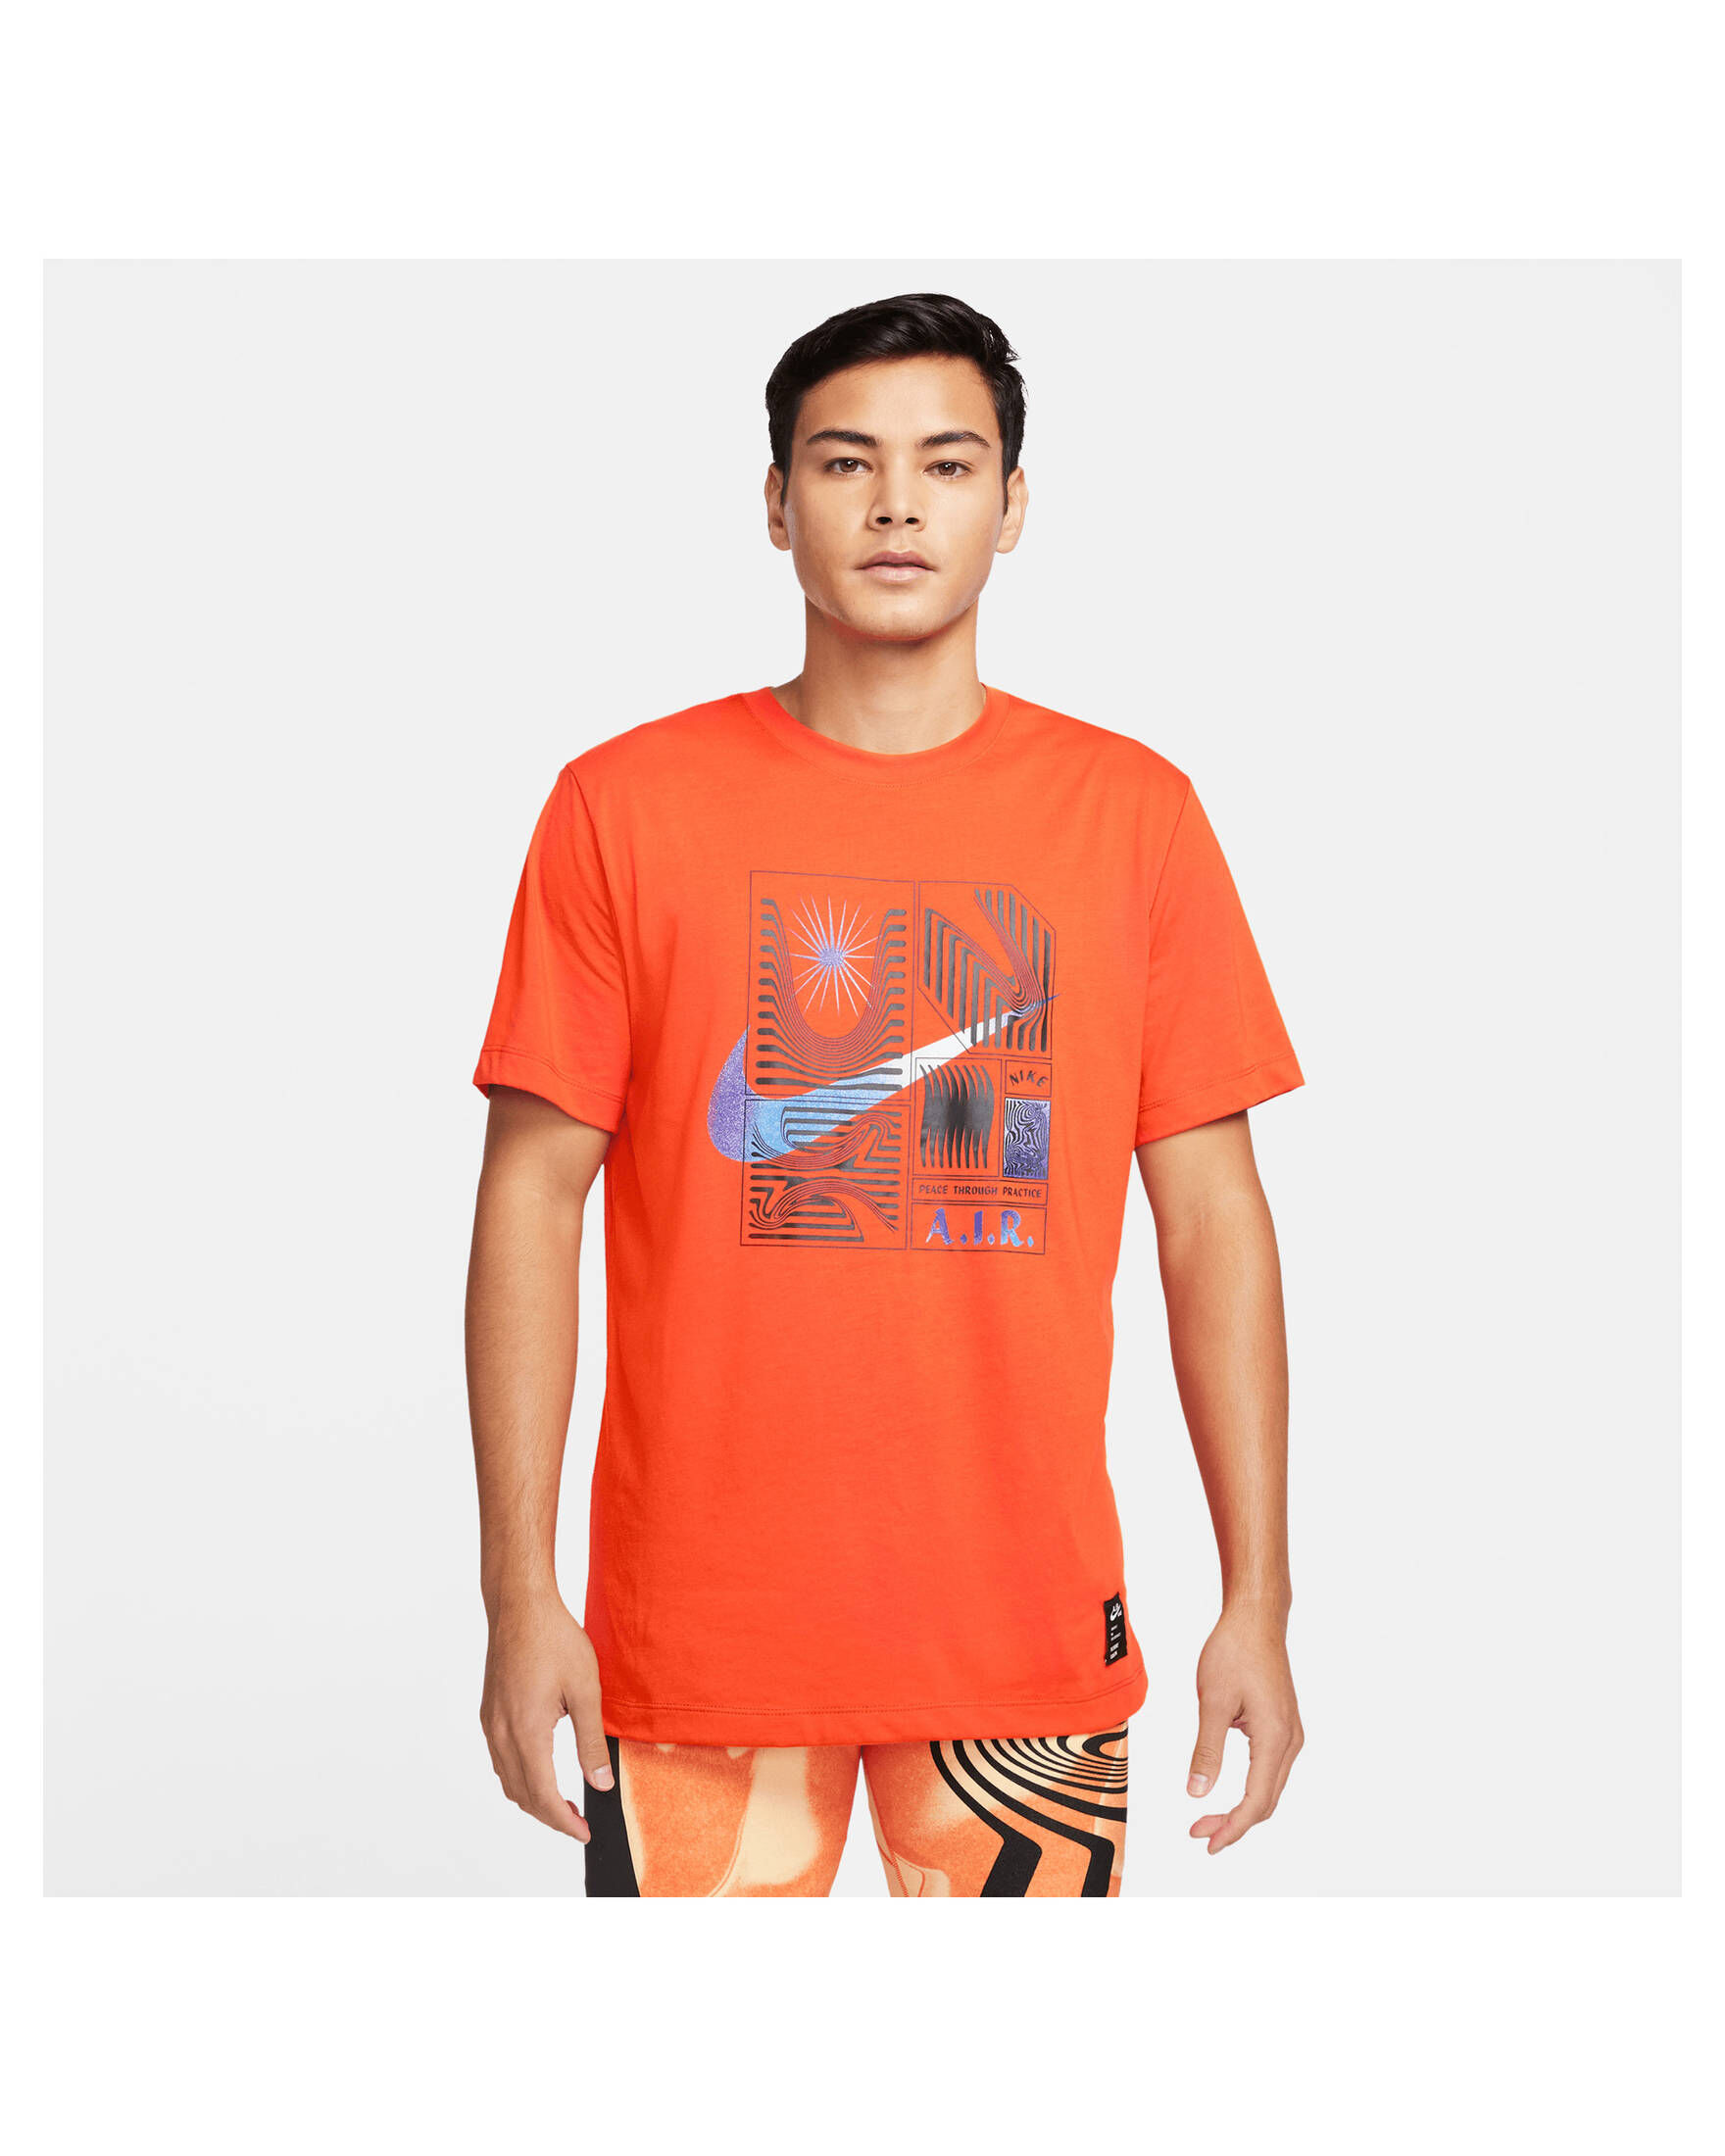 DRI-FIT kaufen YOGA engelhorn T-Shirt A.I.R. Herren | NIKE Nike